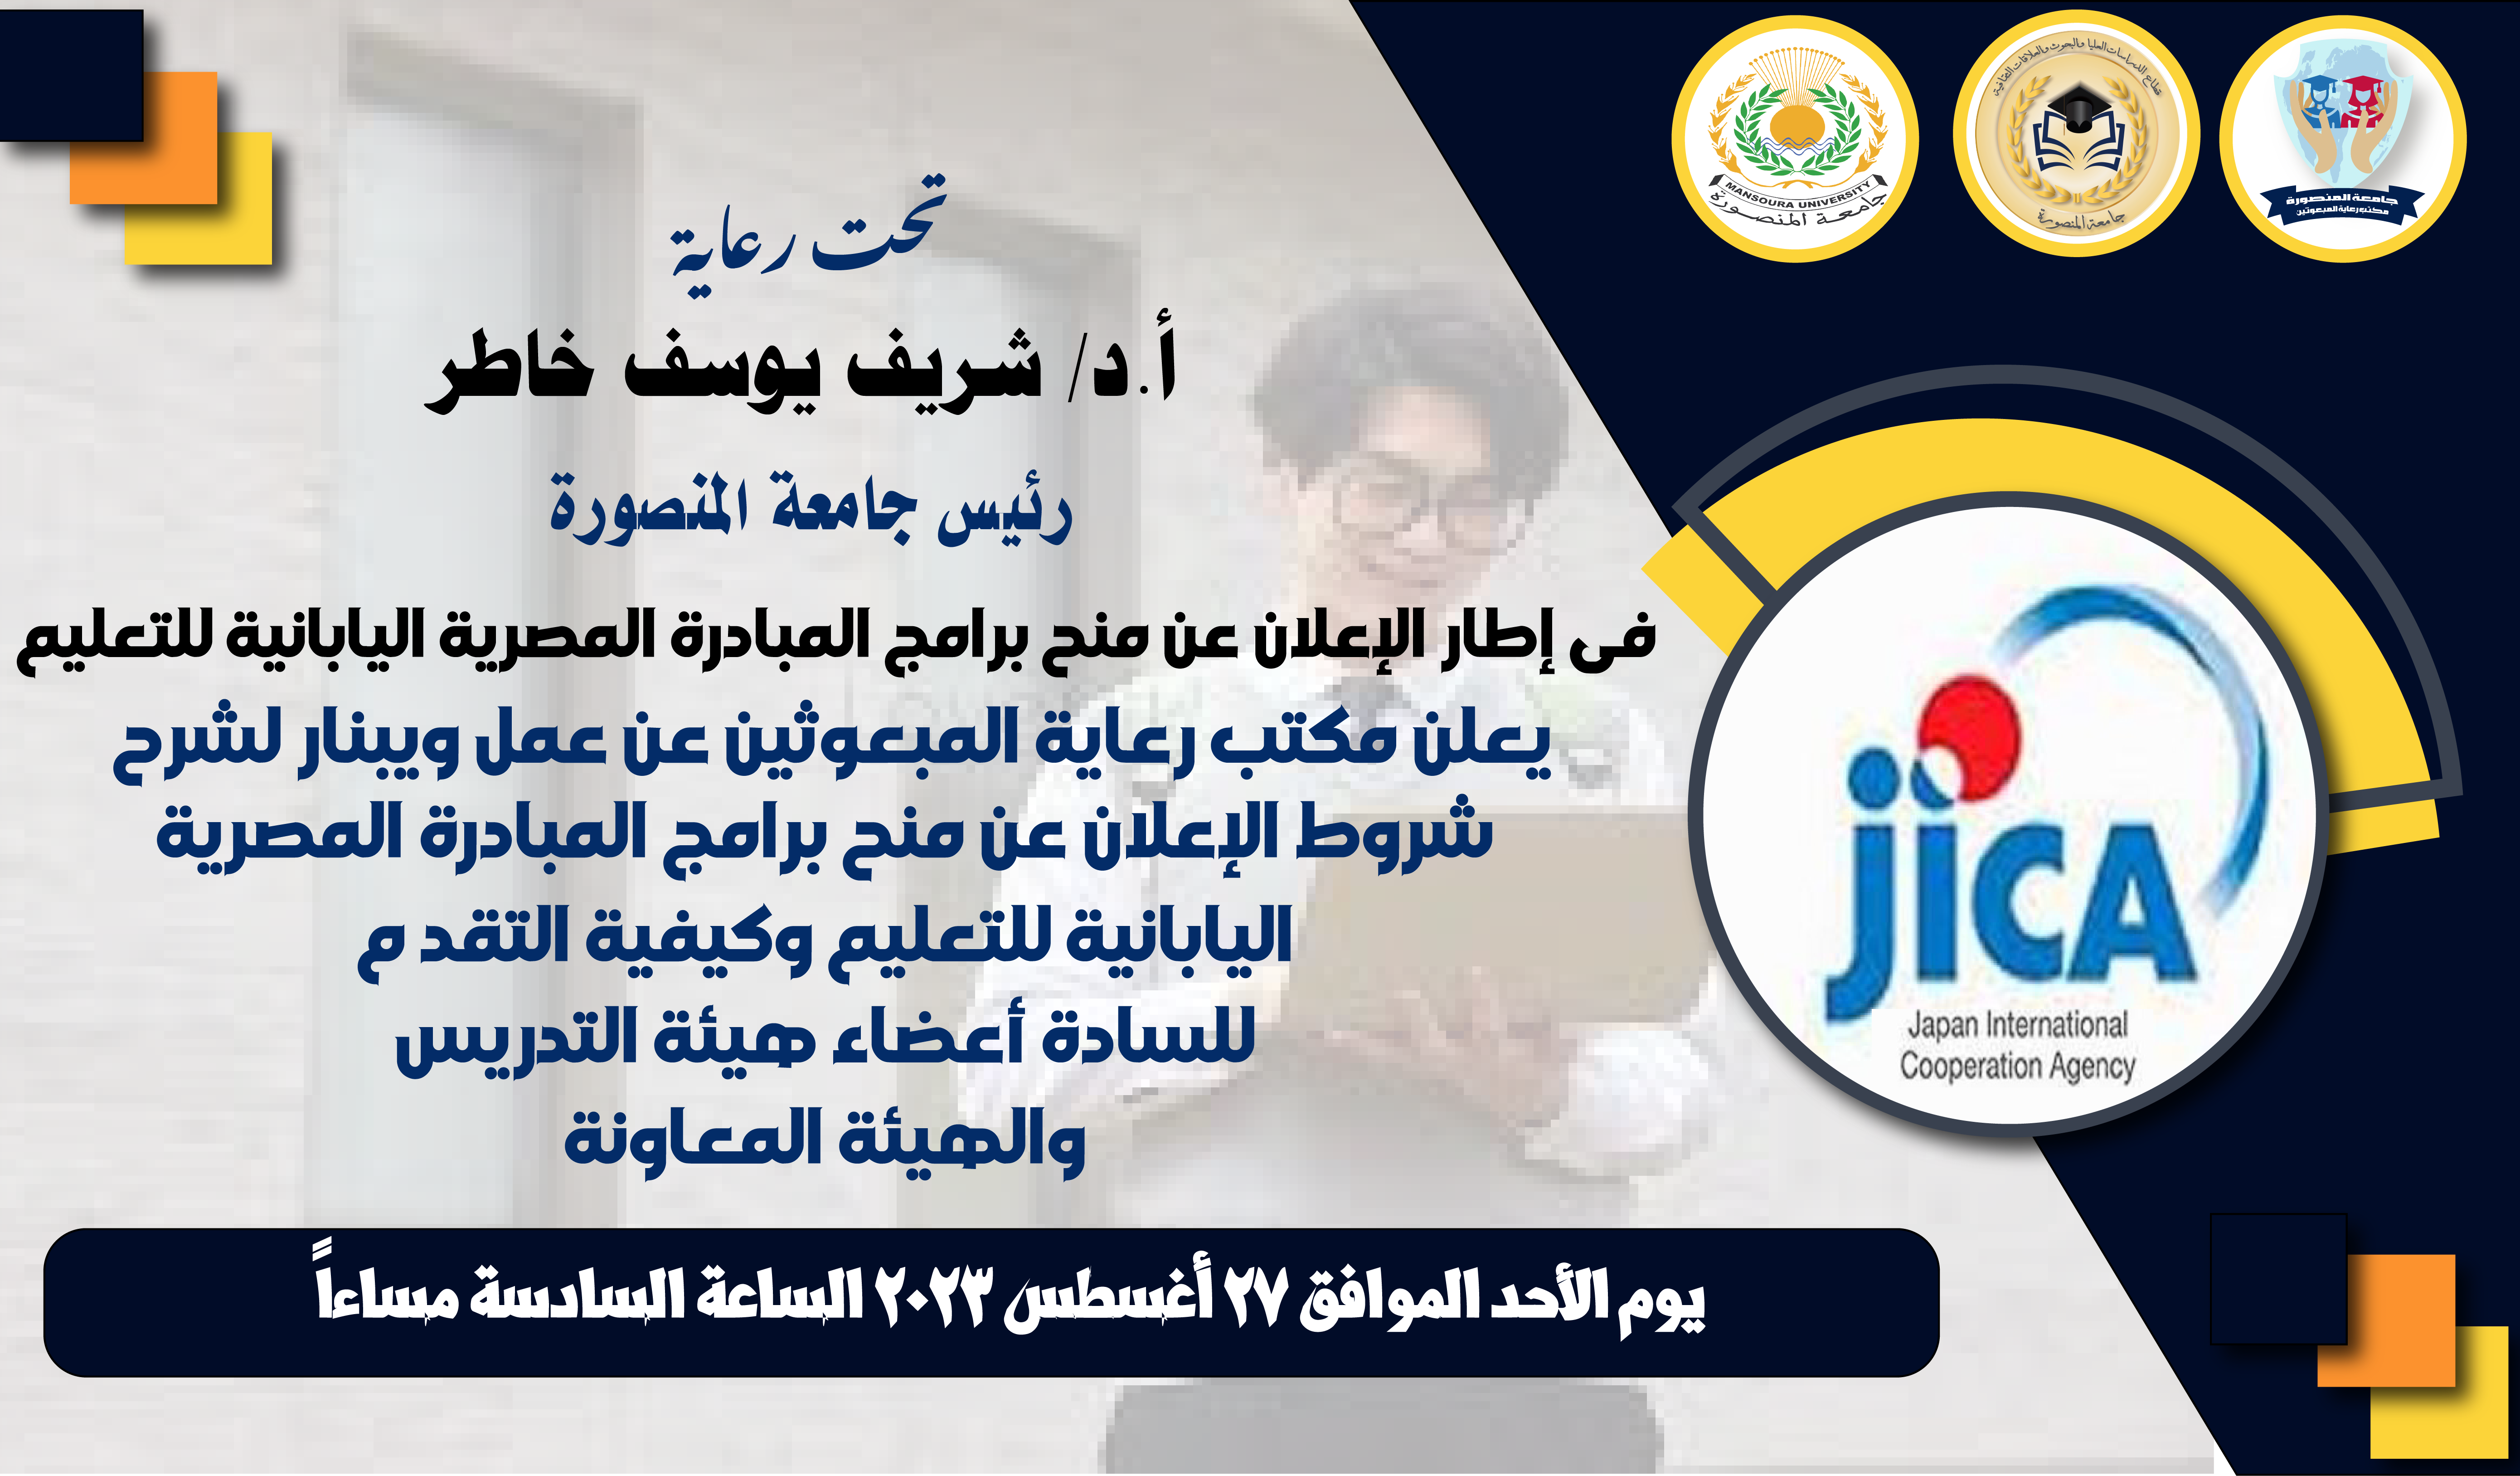 وبينار لشرح شروط الإعلان عن منح برامج المبادرة المصرية اليابانية للتعليم وكيفية التقدم